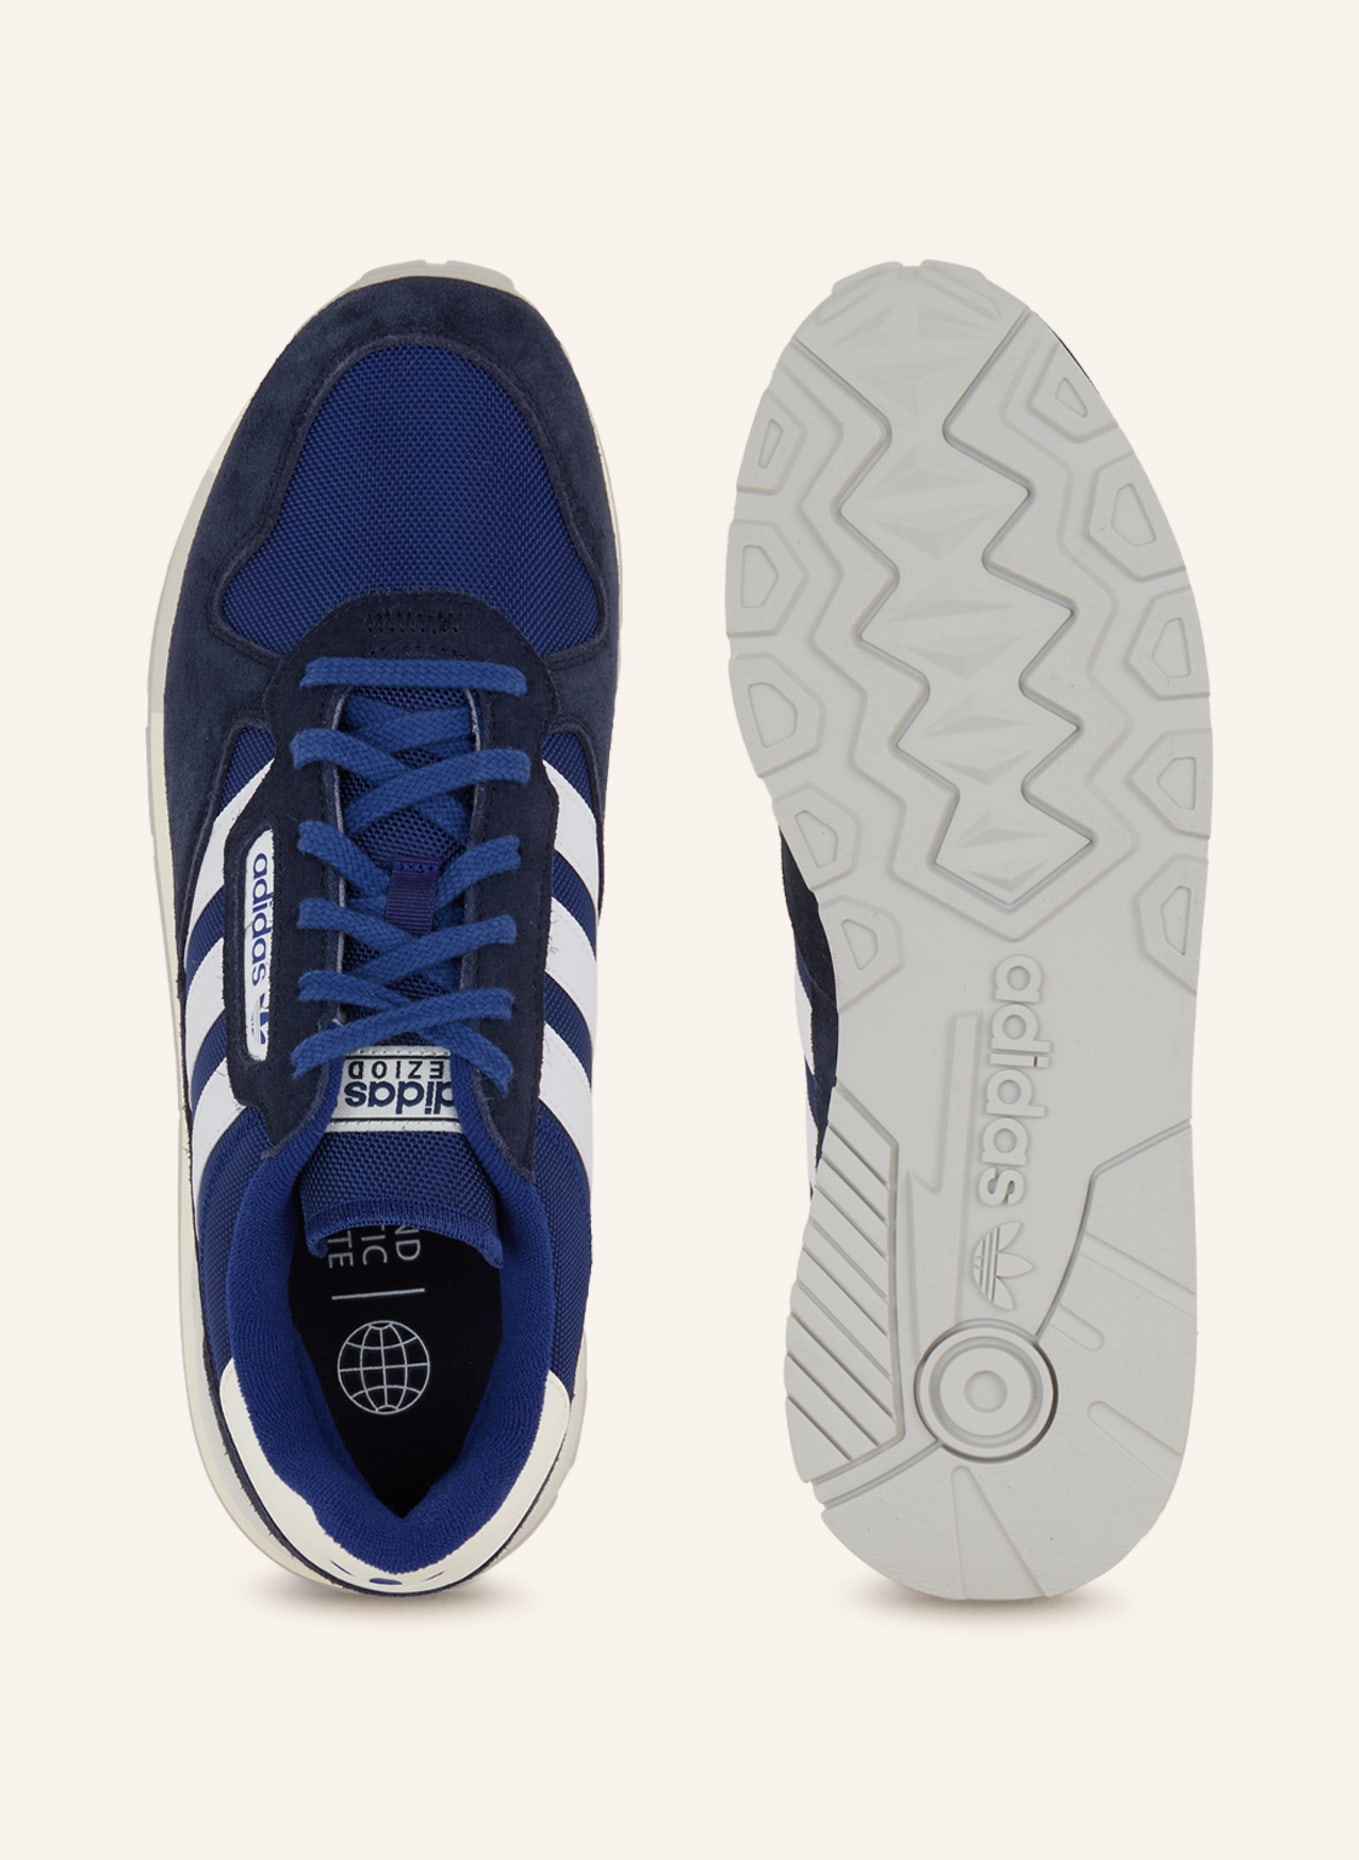 Originals white/ blue/ dark 2 in TREZIOD blue Sneakers adidas